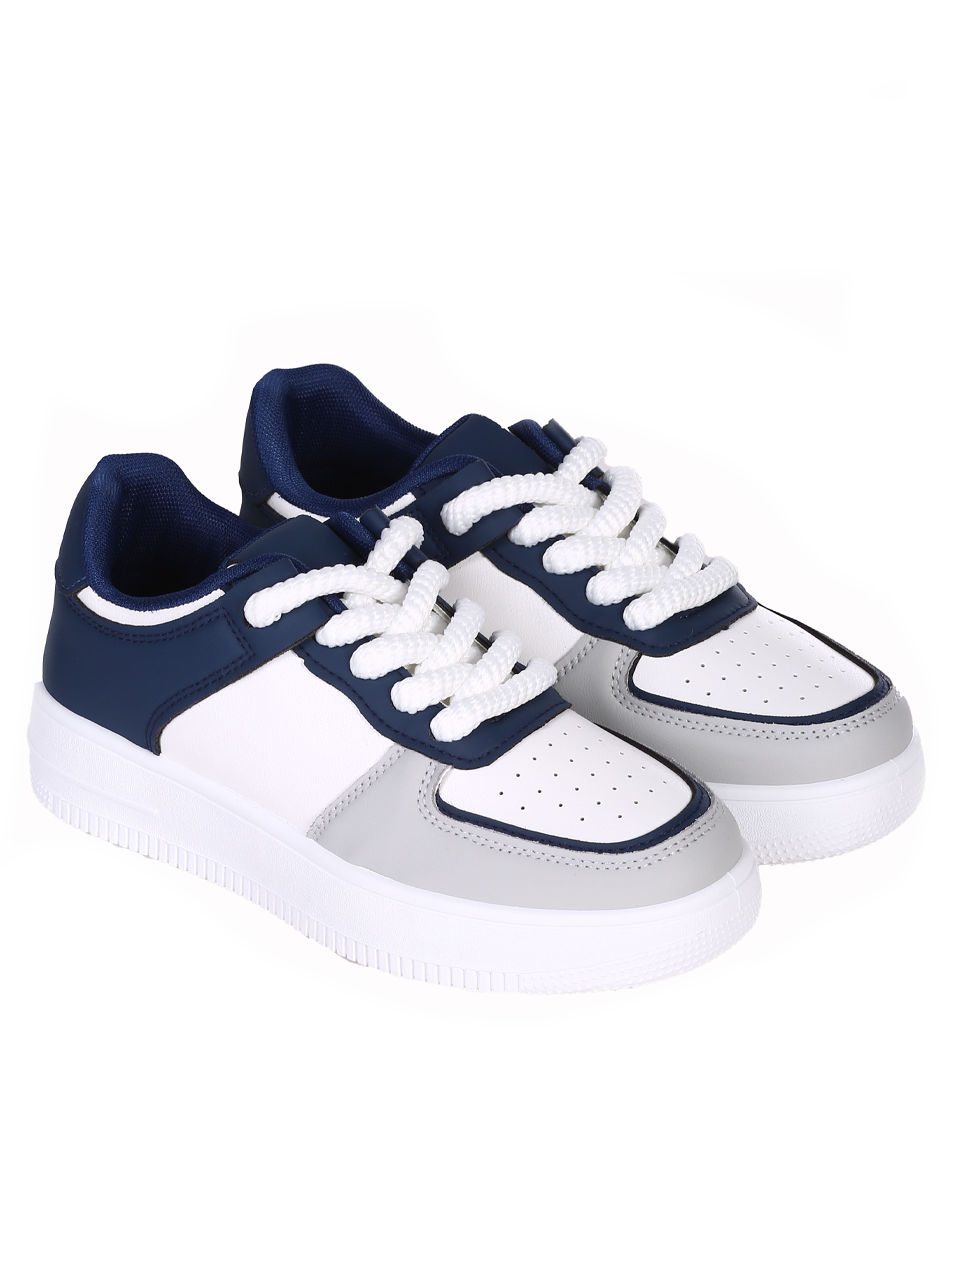 Eжедневни обувки в бял/син цвят 13U-24120 white/blue